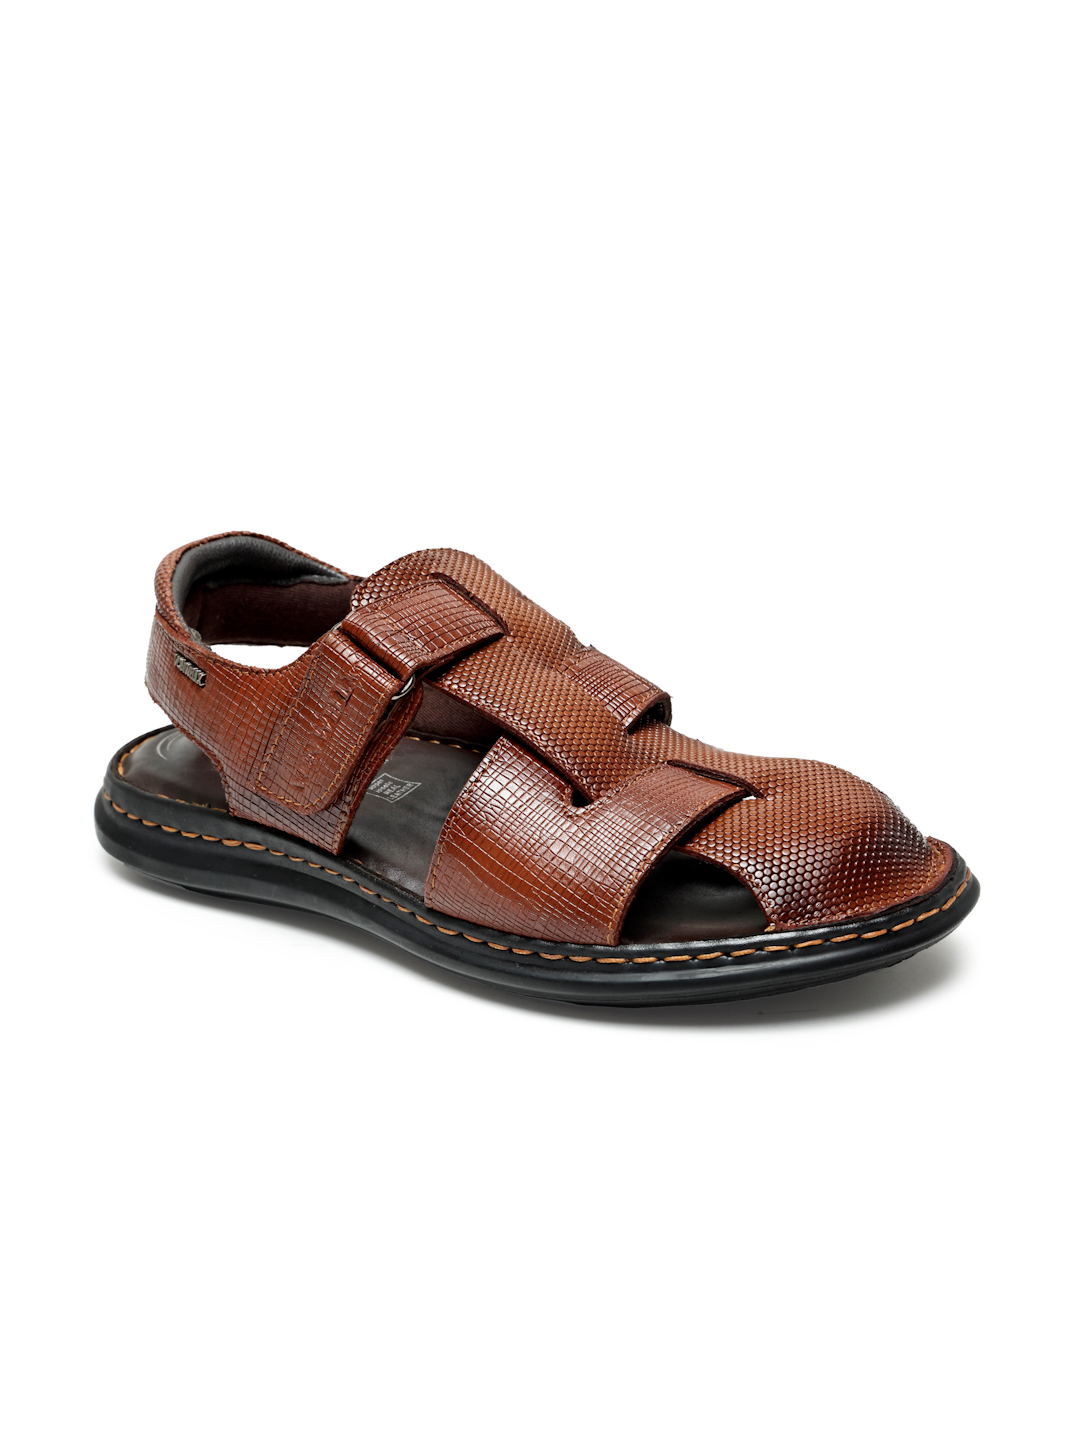 Buy Von Wellx Germany Comfort Men's Tan Sandals Morgen Online in Tamil Nadu